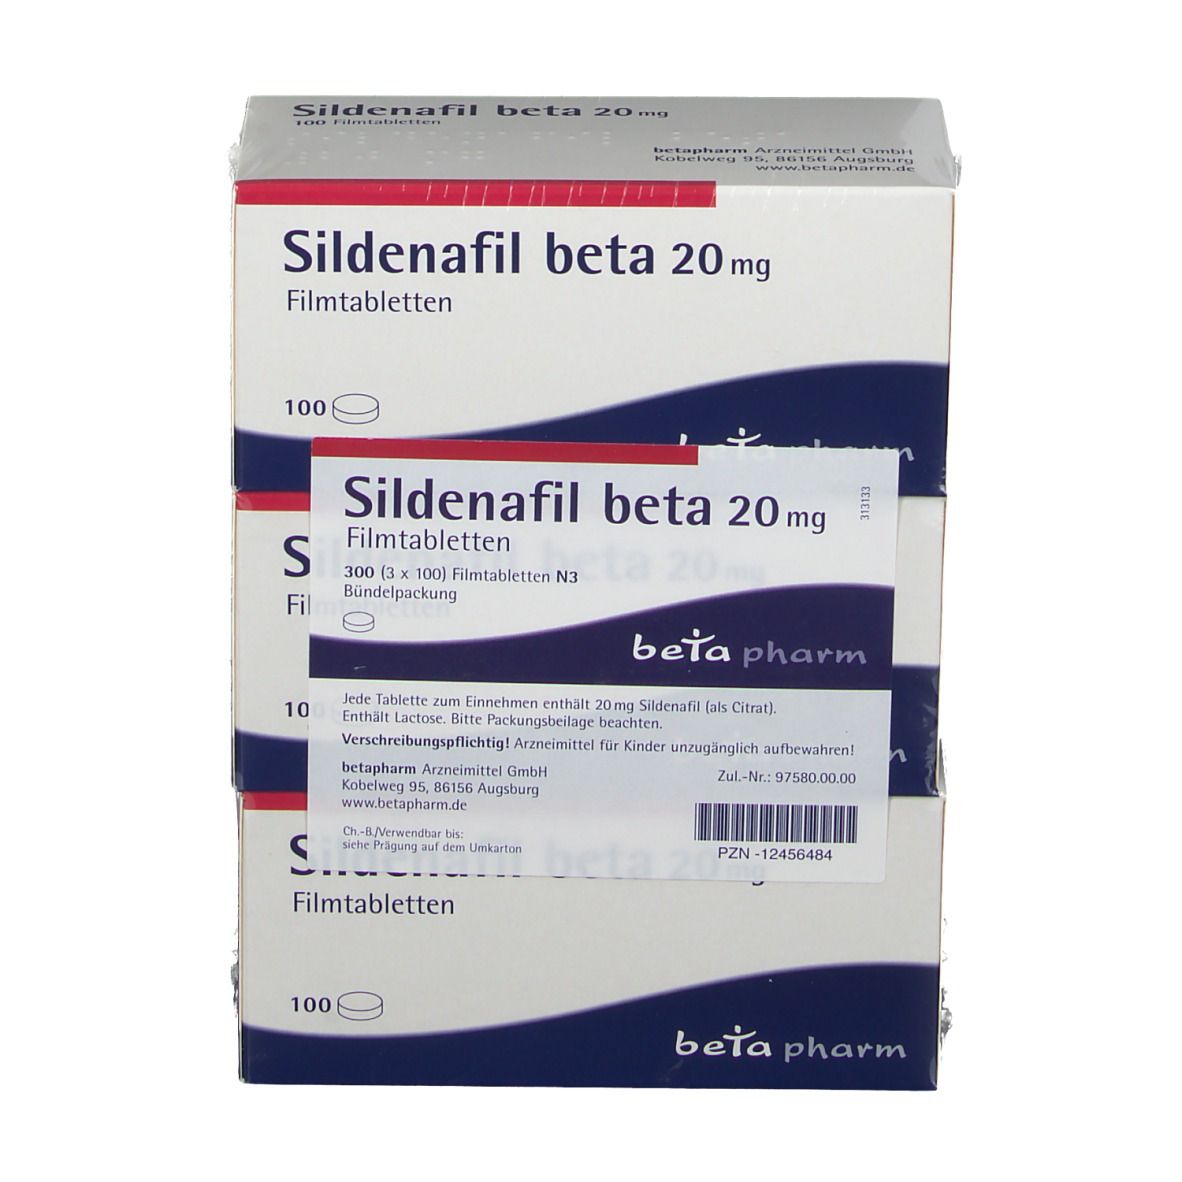 Sildenafil beta 20 mg